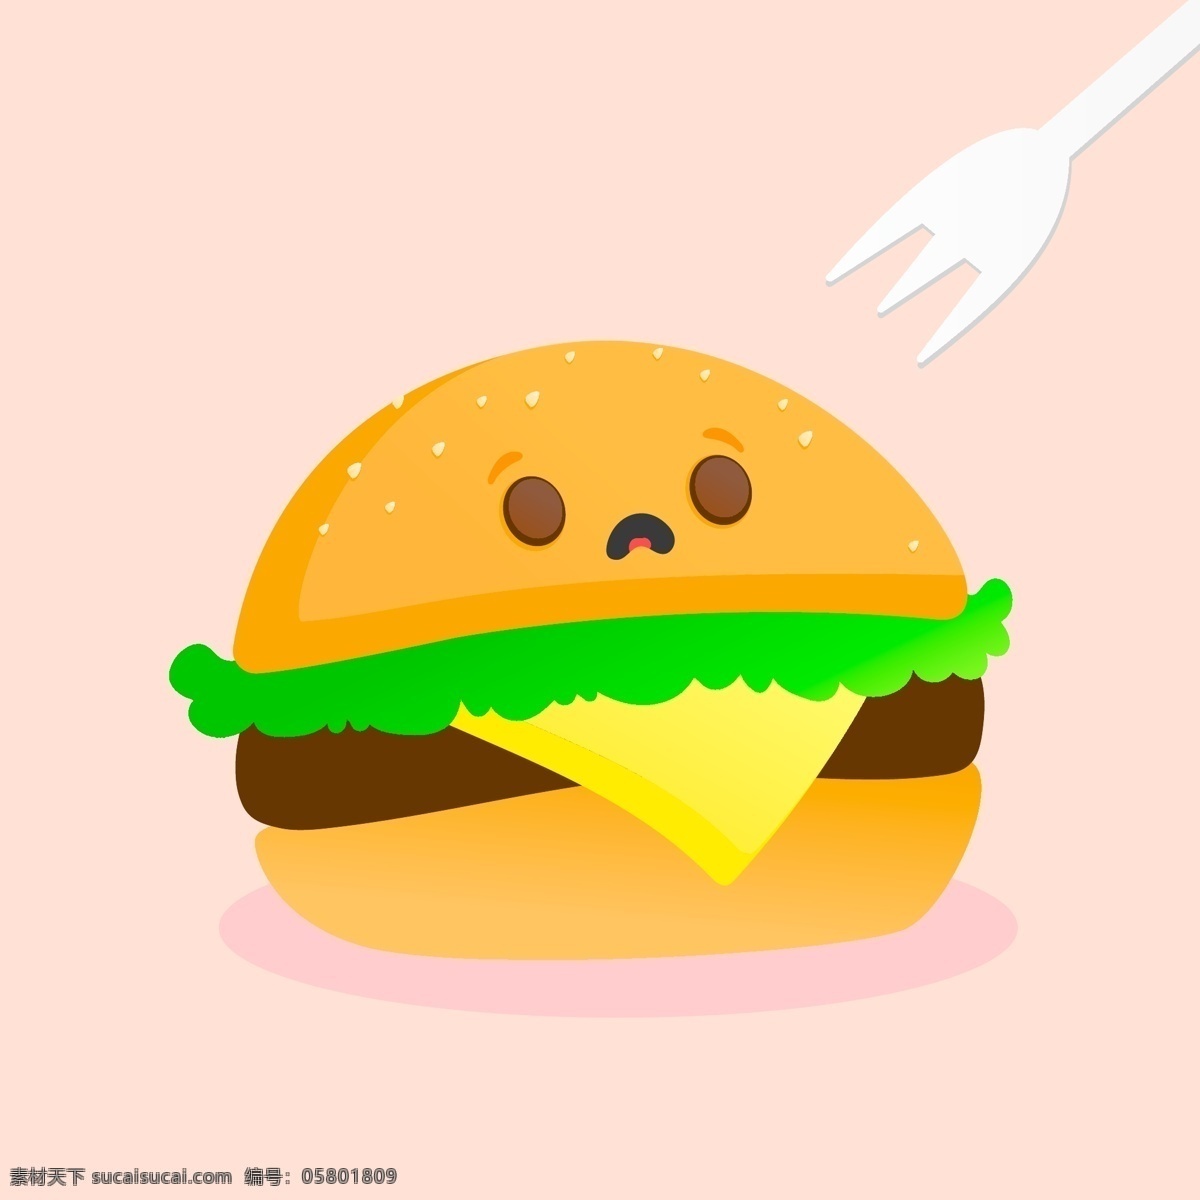 汉堡包 面包 叉子 三明治 卡通 动漫 插画 烹饪 美食 食物 杂七杂八 生活百科 餐饮美食